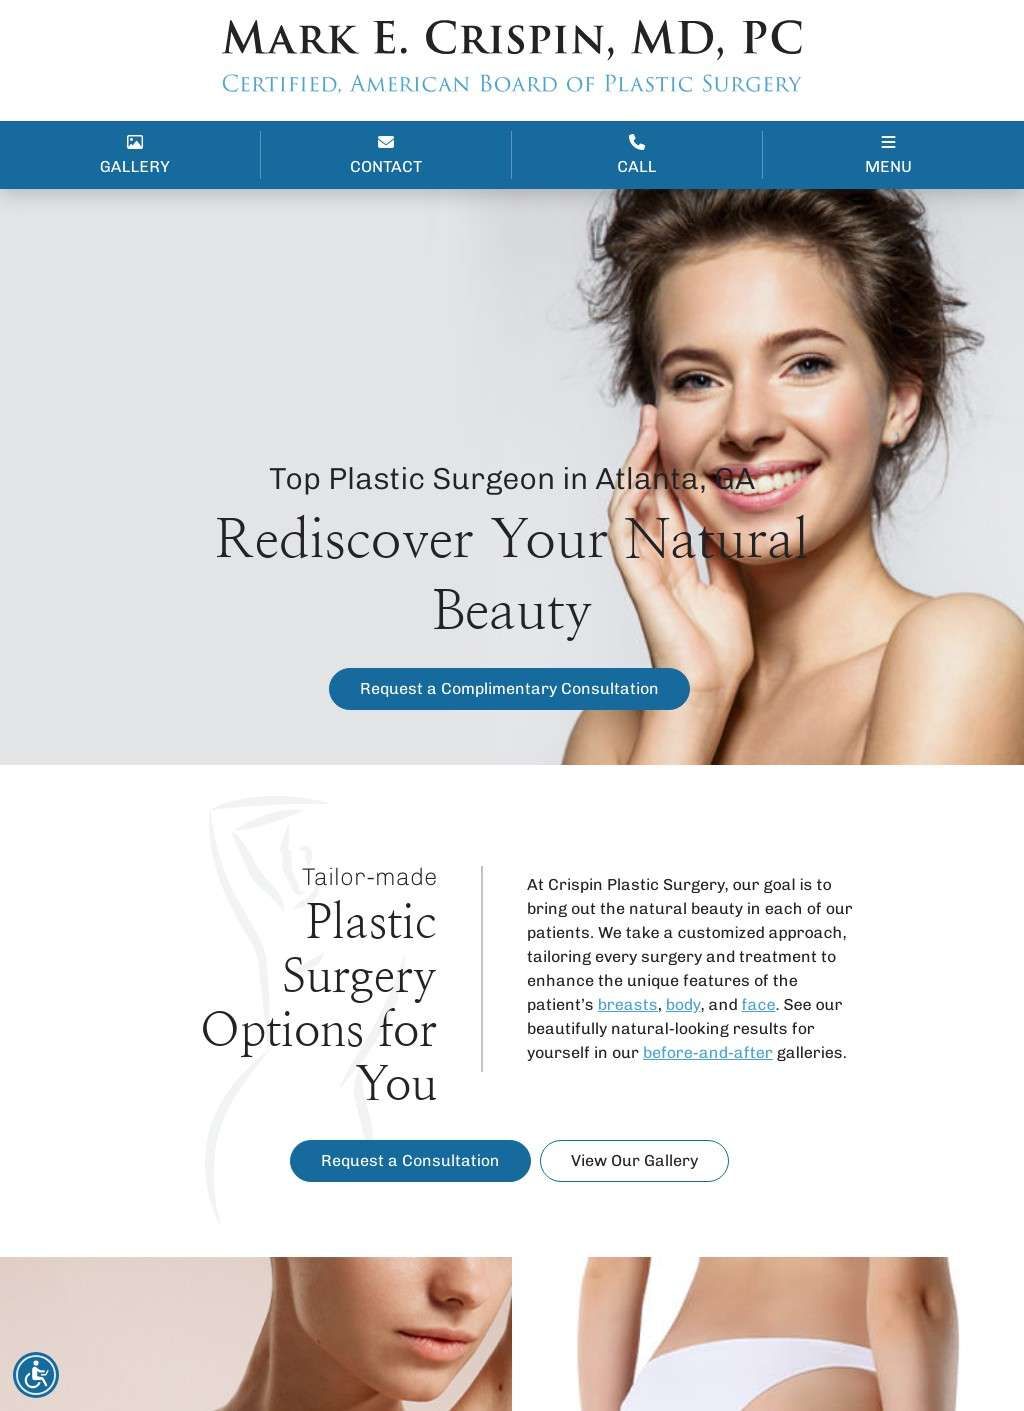 Crispin Plastic Surgery - Mark E. Crispin, MD